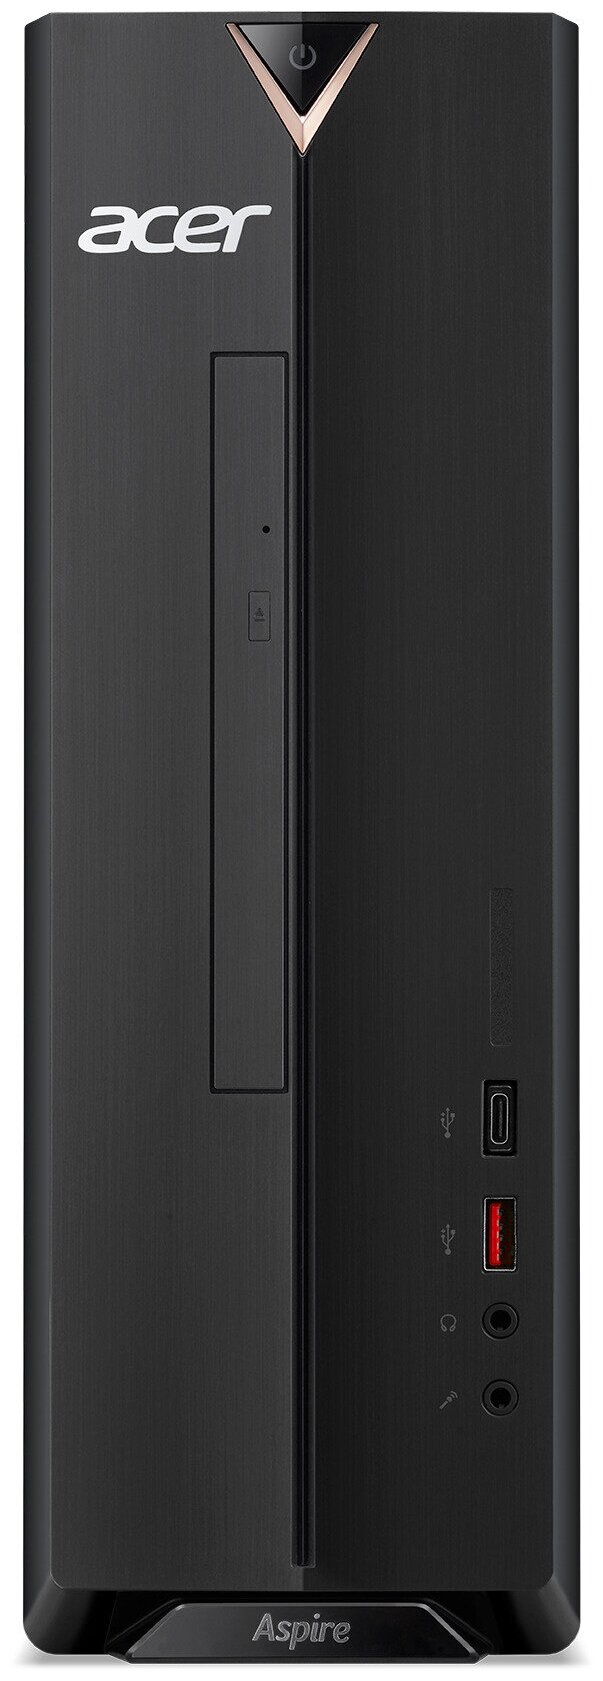 Компьютер ACER Aspire XC-1660, черный